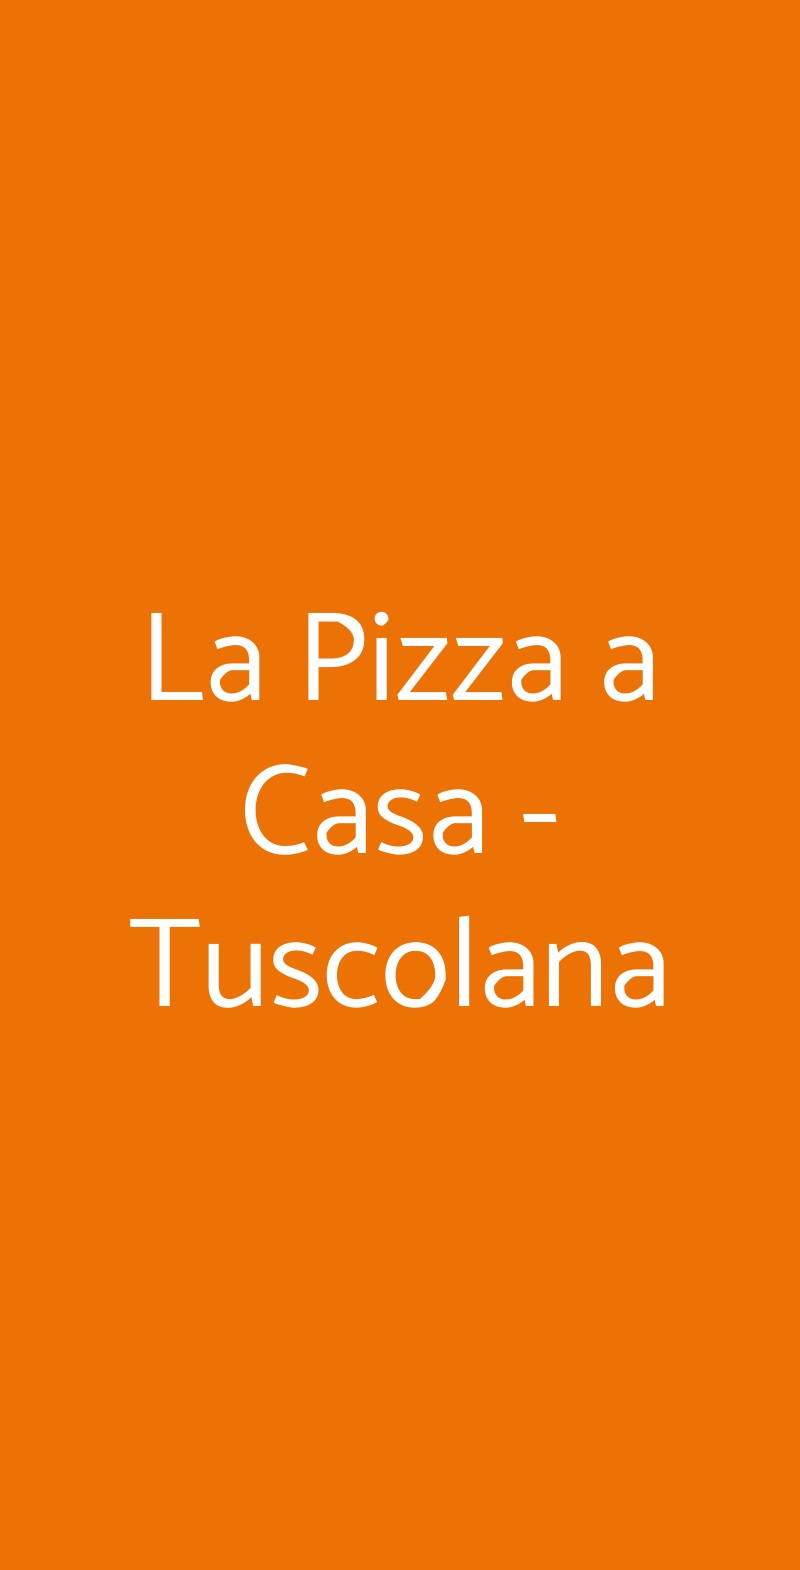 La Pizza a Casa - Tuscolana Roma menù 1 pagina